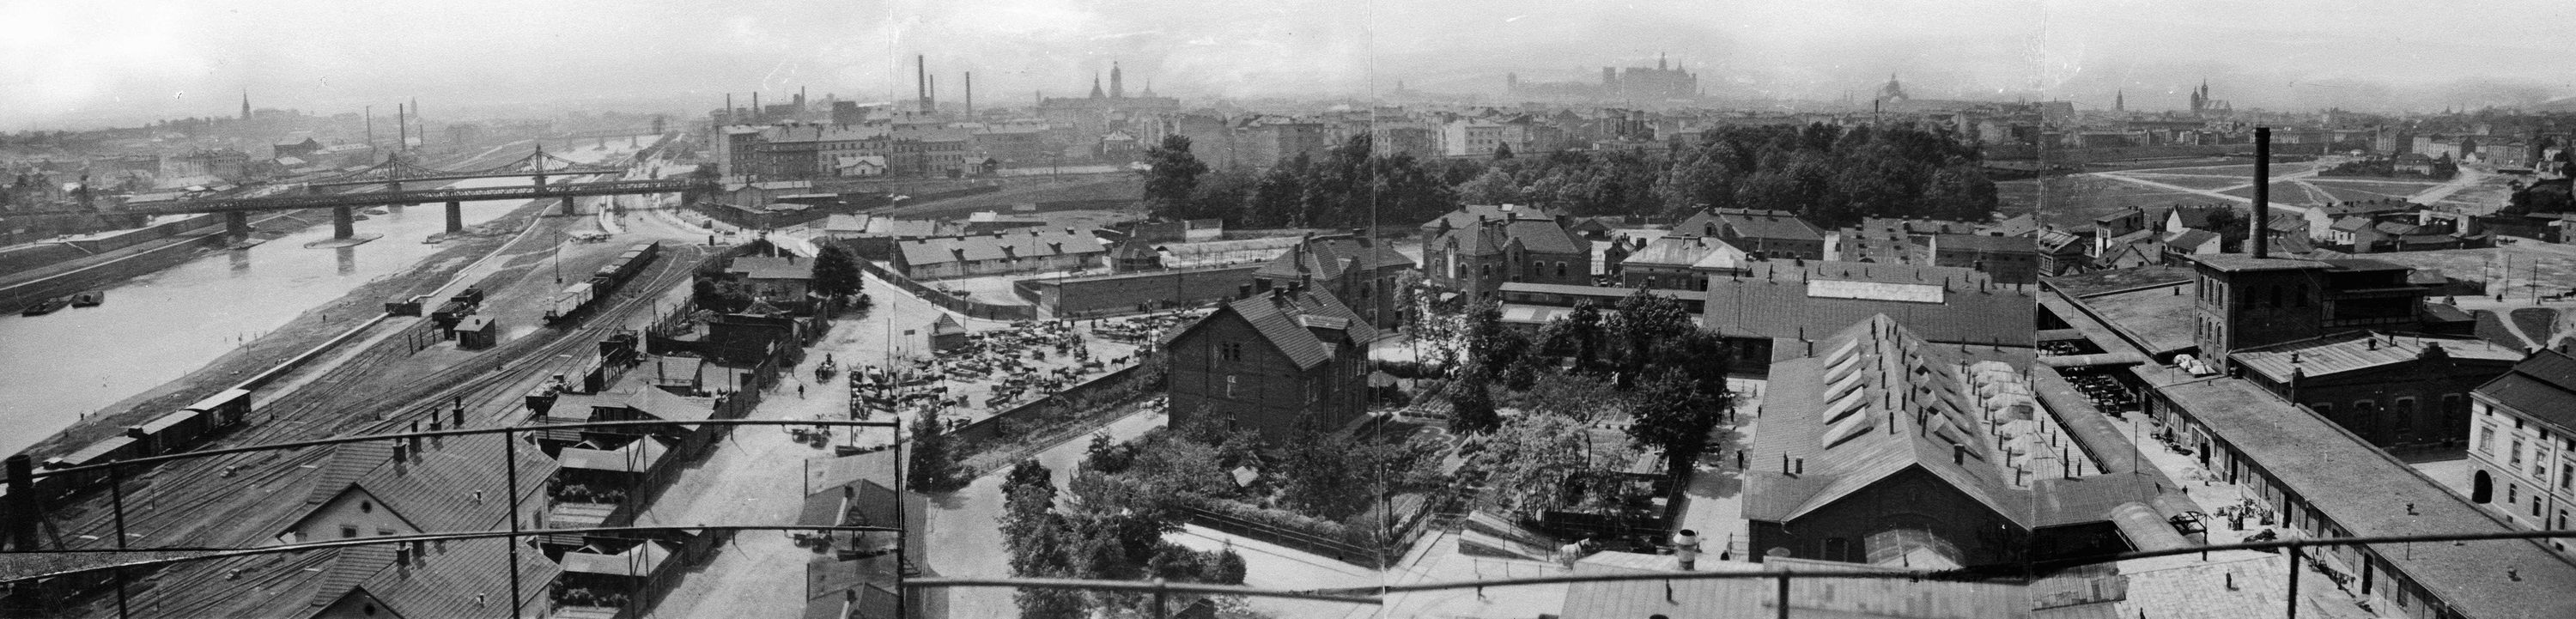 zabudowania-rzezni-miejskiej-fot-stanislaw-kolowca-ok-1926